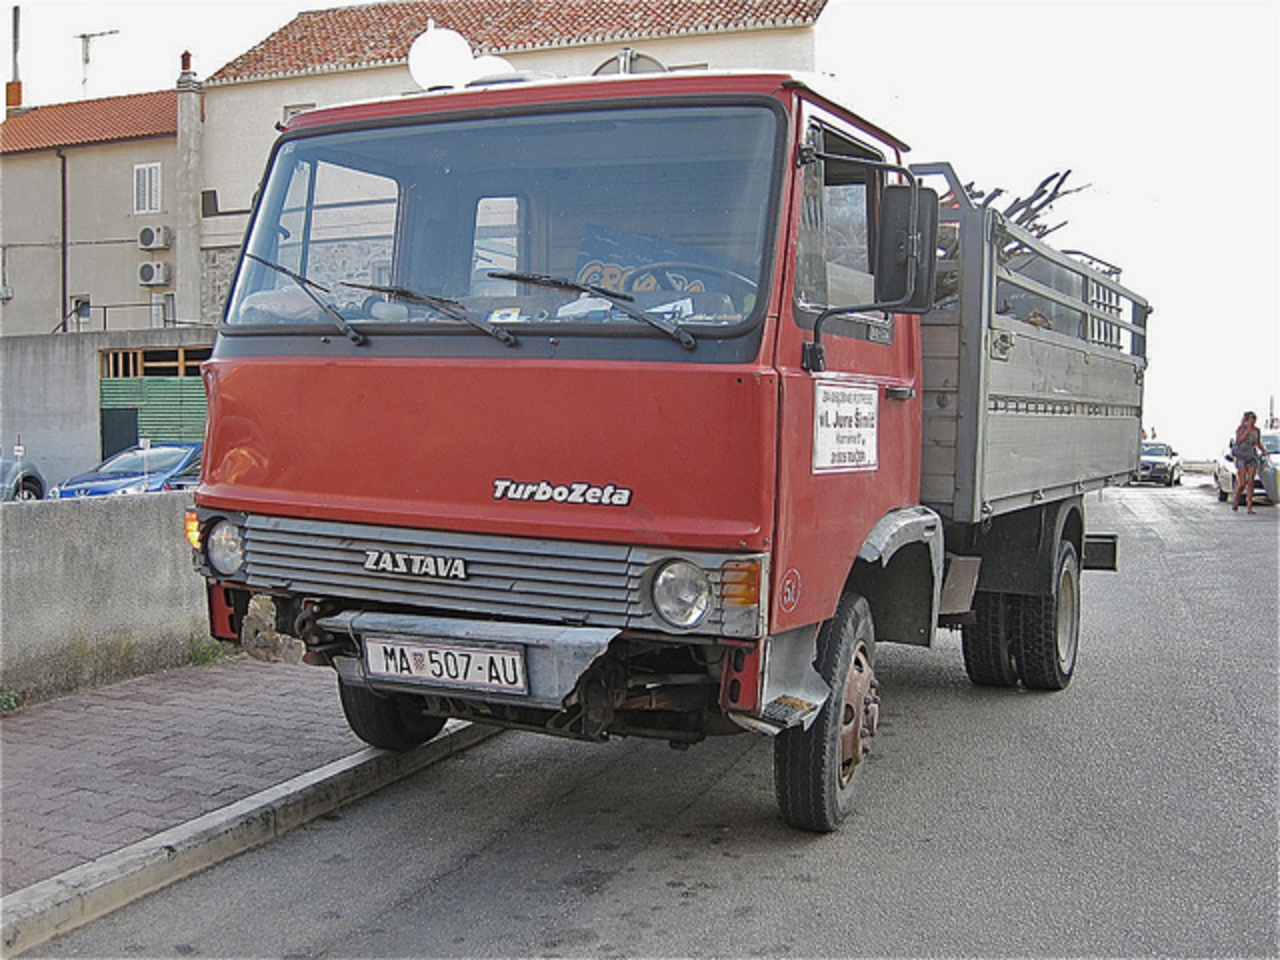 ZASTAVA Turbo-Zeta 80-12A, light truck | Flickr - Photo Sharing!